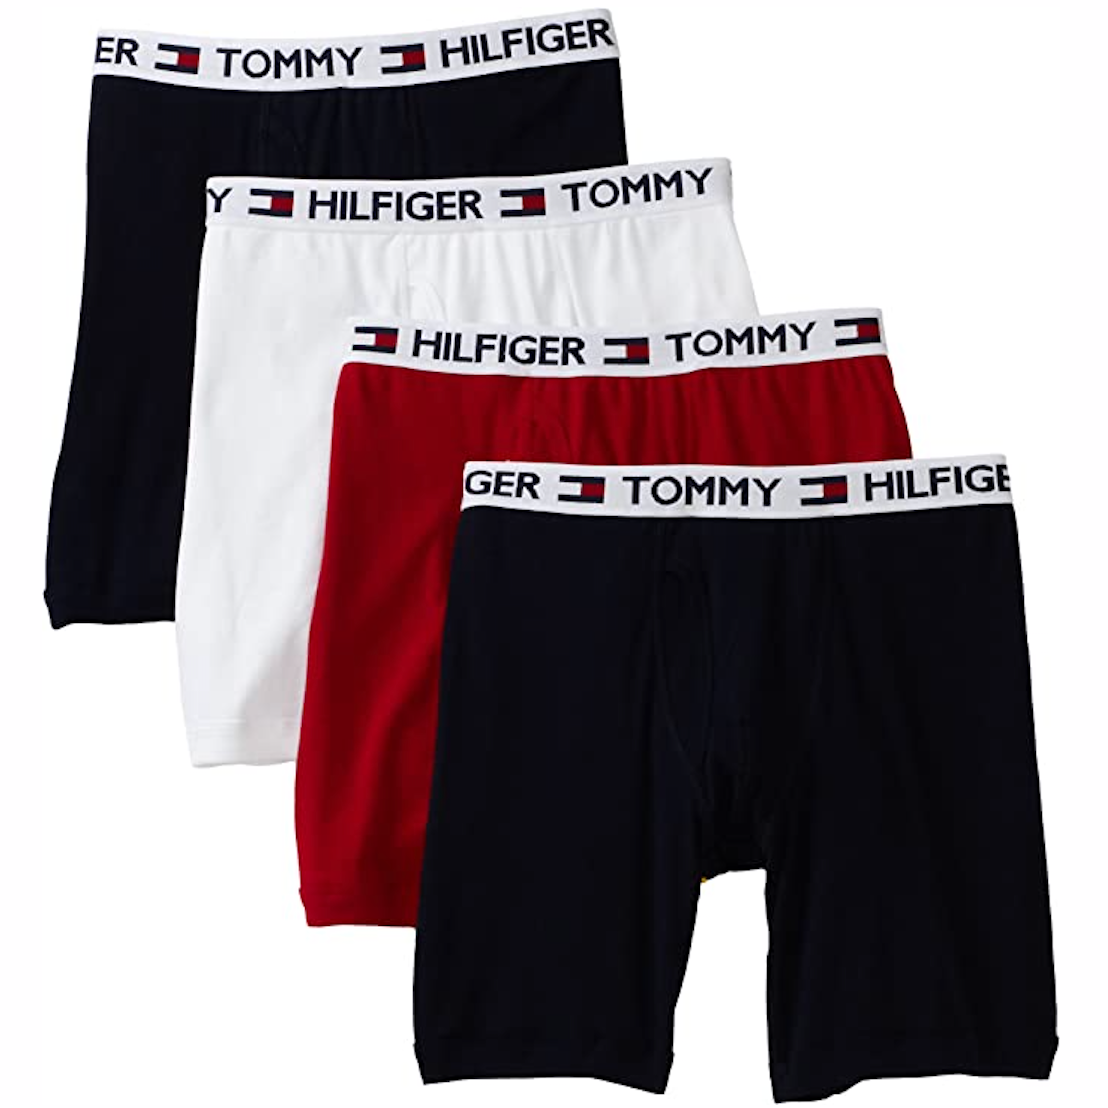 Tommy Hilfiger Men's Underwear Cotton Classics 4-Pack Boxer